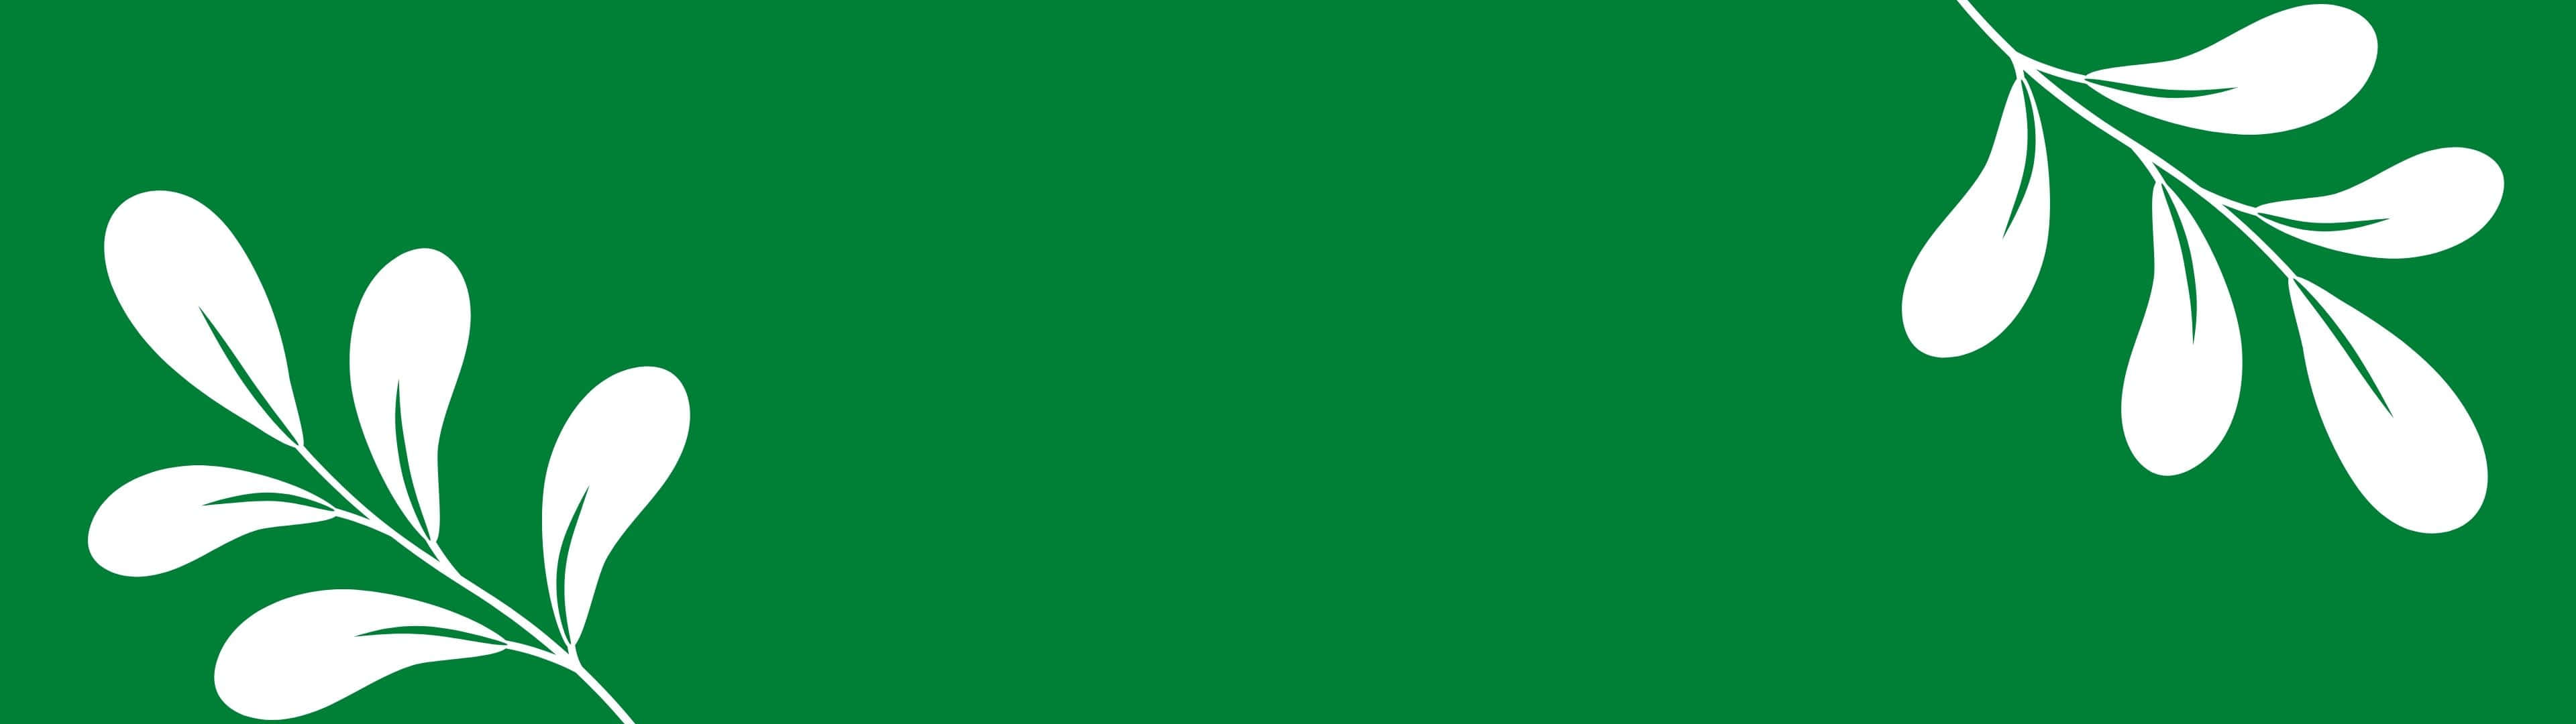 Eingrüner Hintergrund Mit Weißen Blättern Darauf